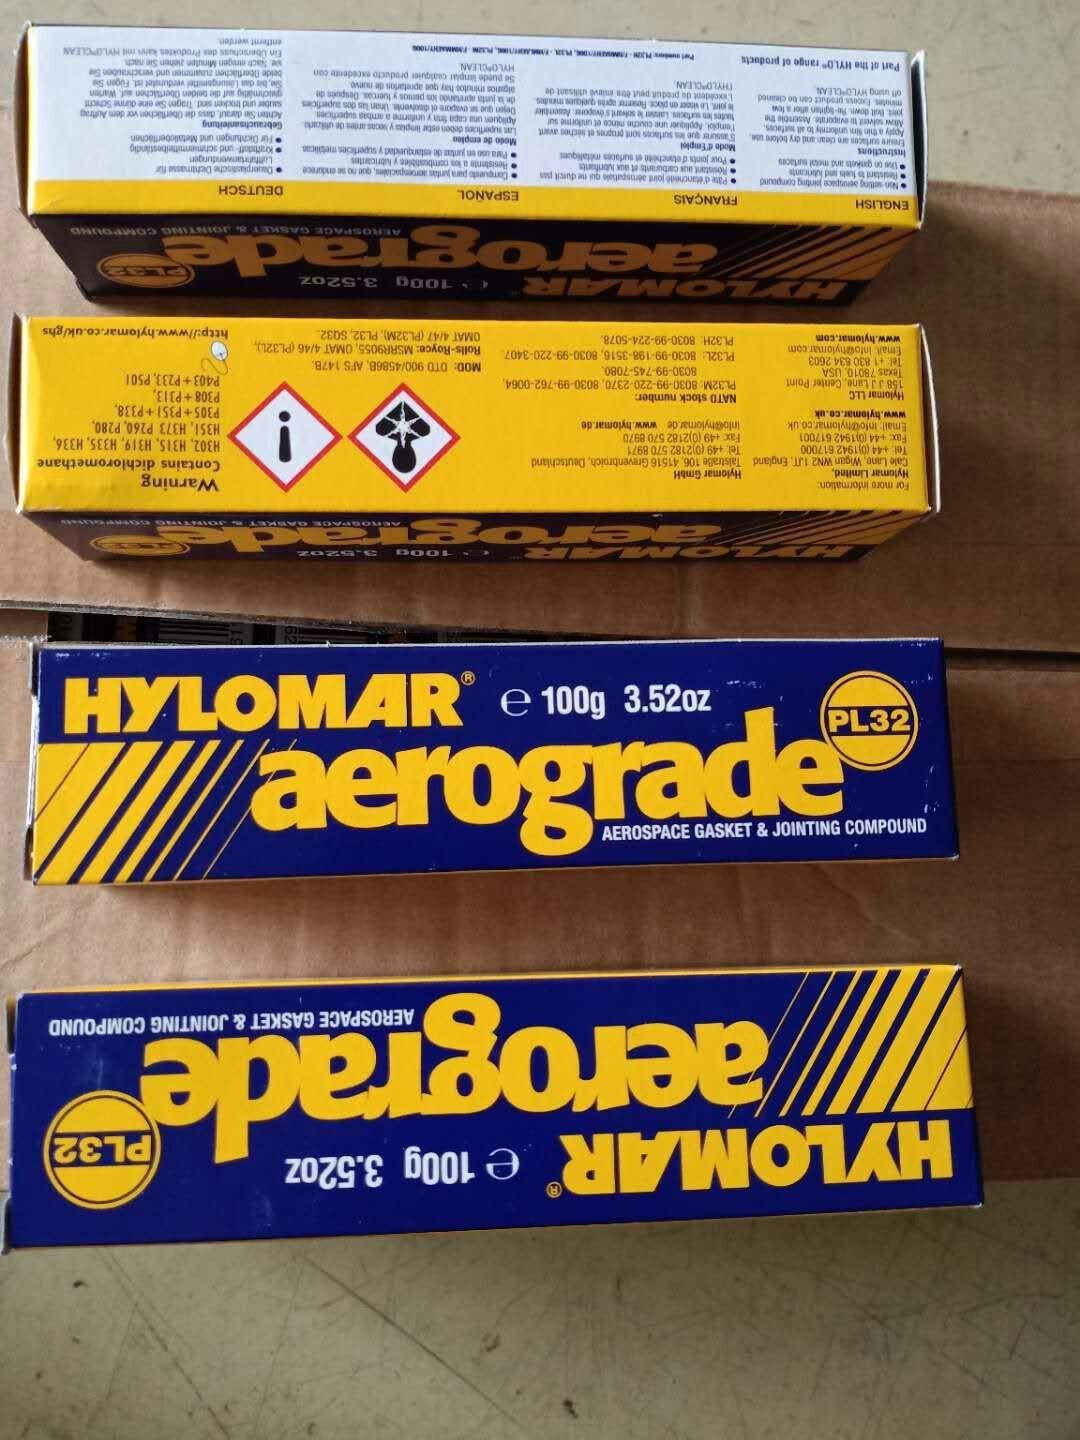 Hylomar AEROGRAD PL32 2